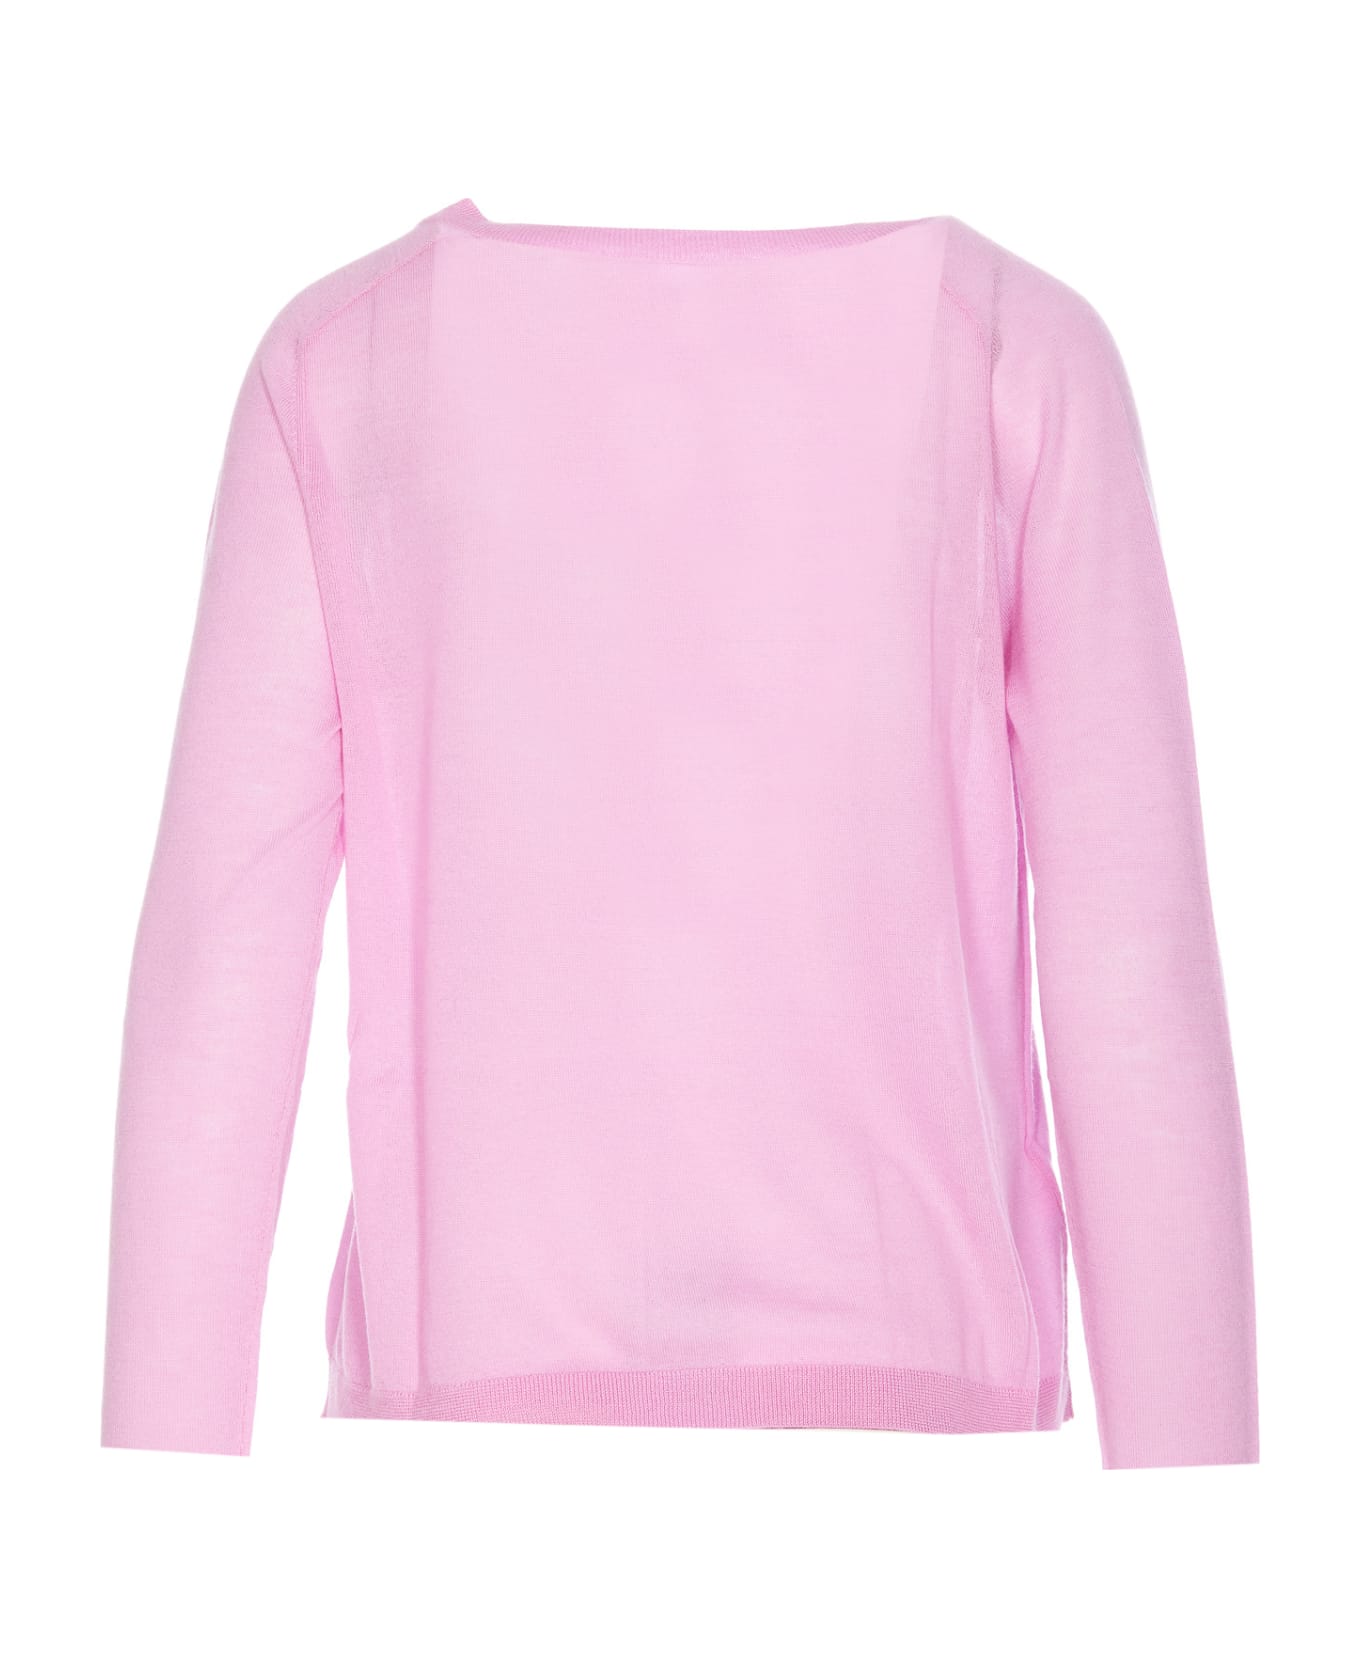 Pinko Ononis Long Sleeves Top - Pink